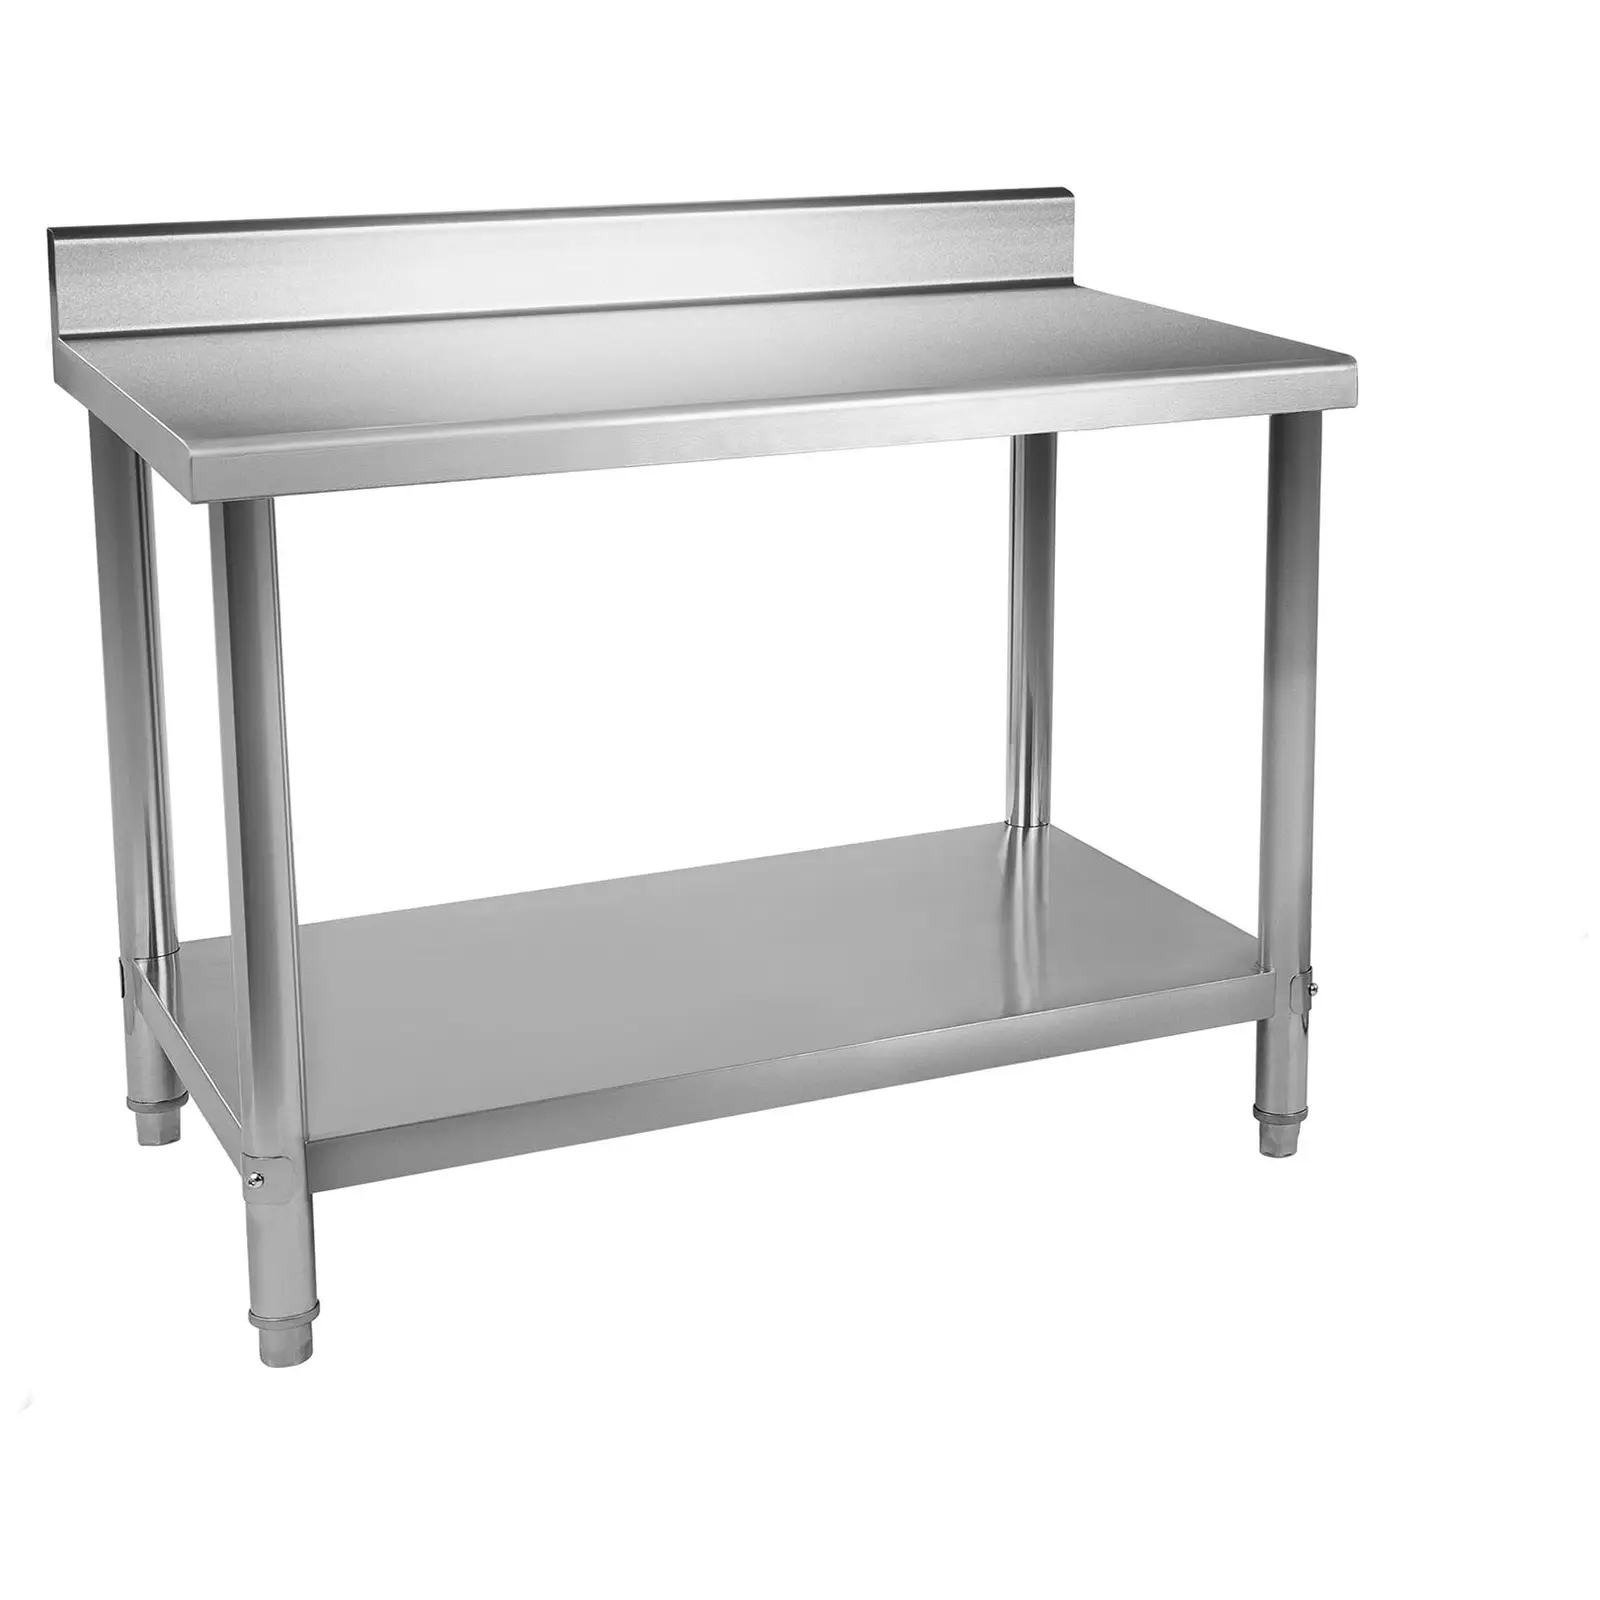 RST työpöytä - 100 x 70 cm - roiskelevy - 120 kg kantavuus